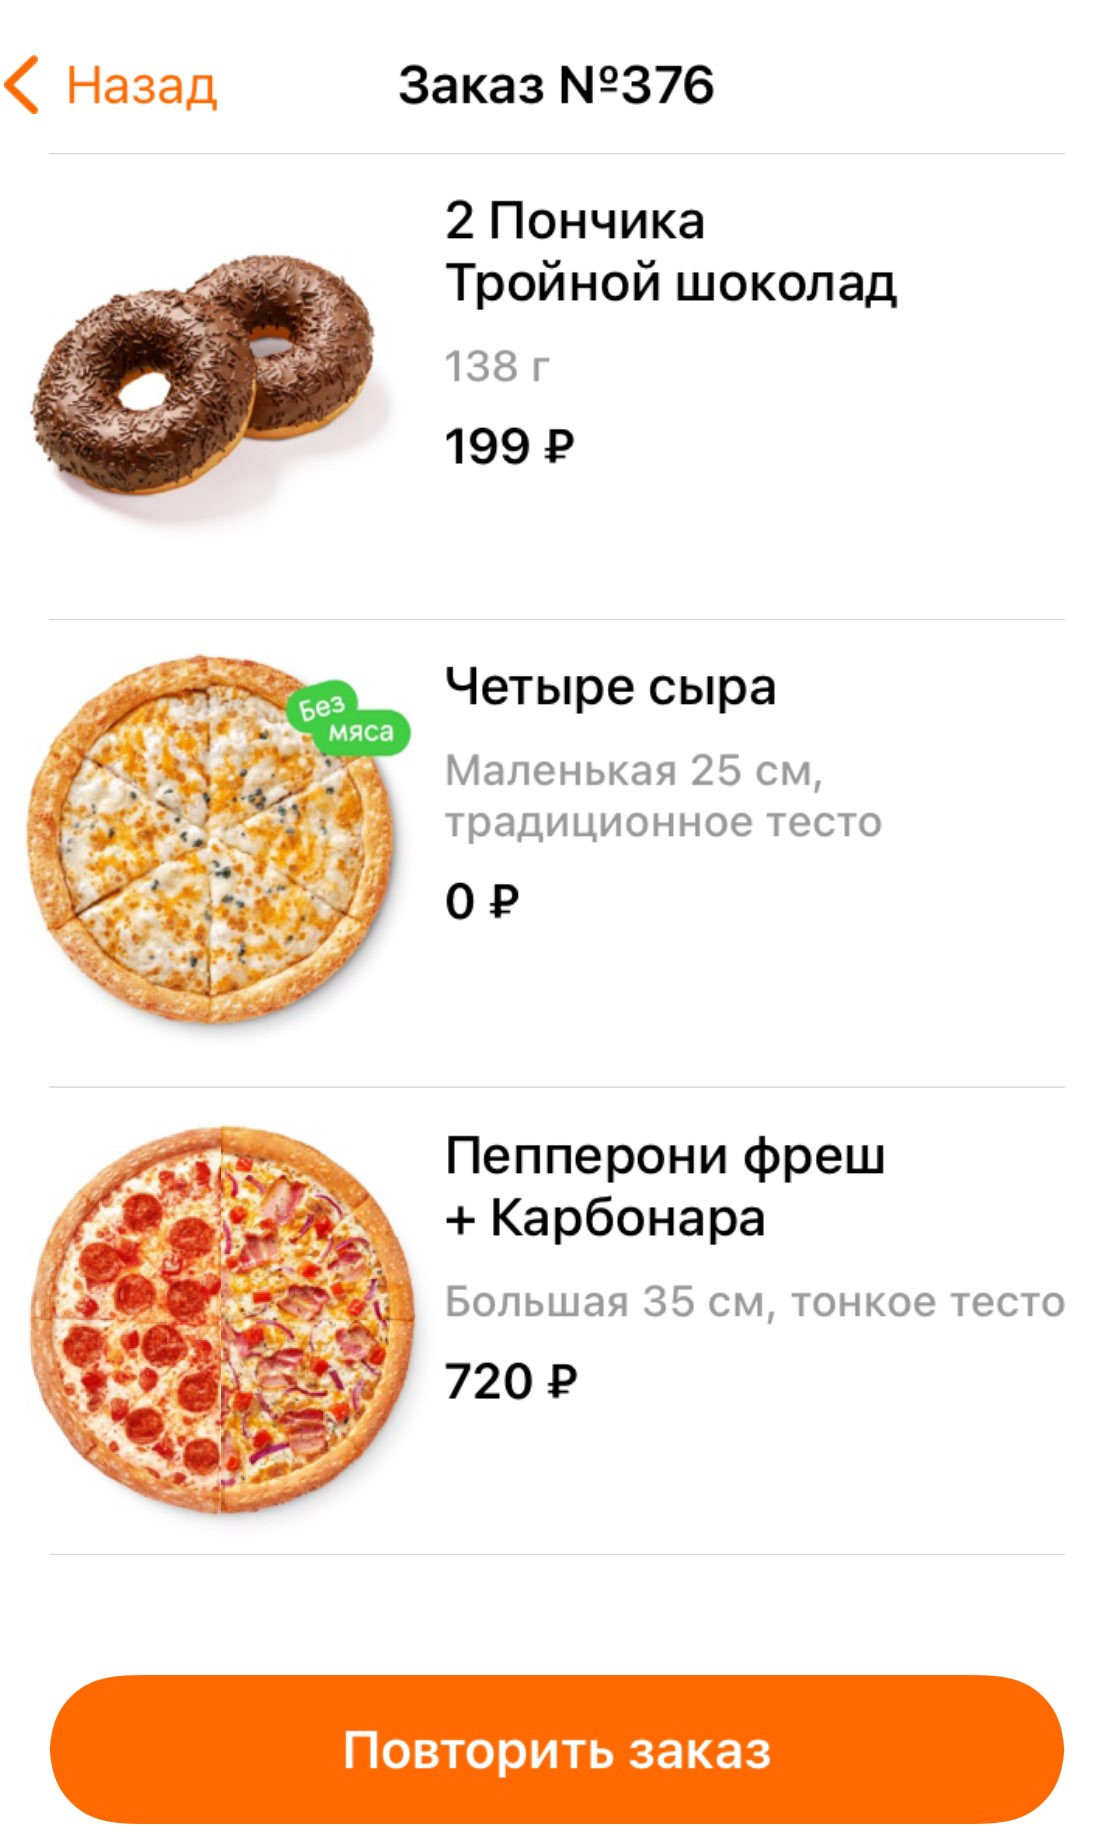 сколько стоит большая пицца пепперони в додо пицца фото 43